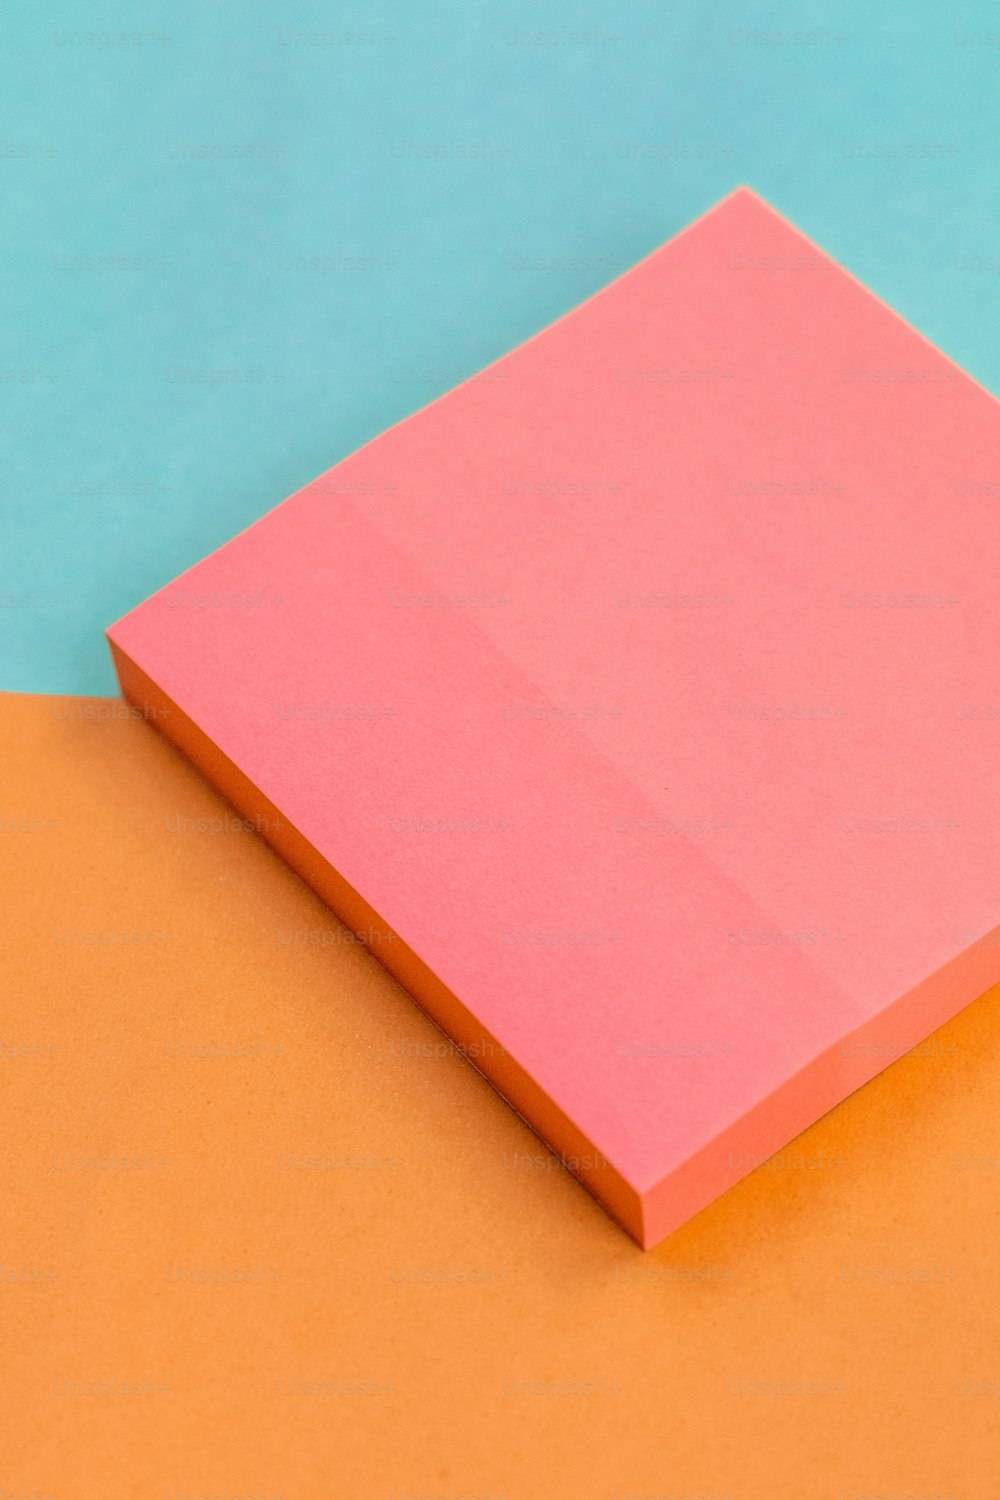 un morceau de papier rose posé sur une surface orange et bleue